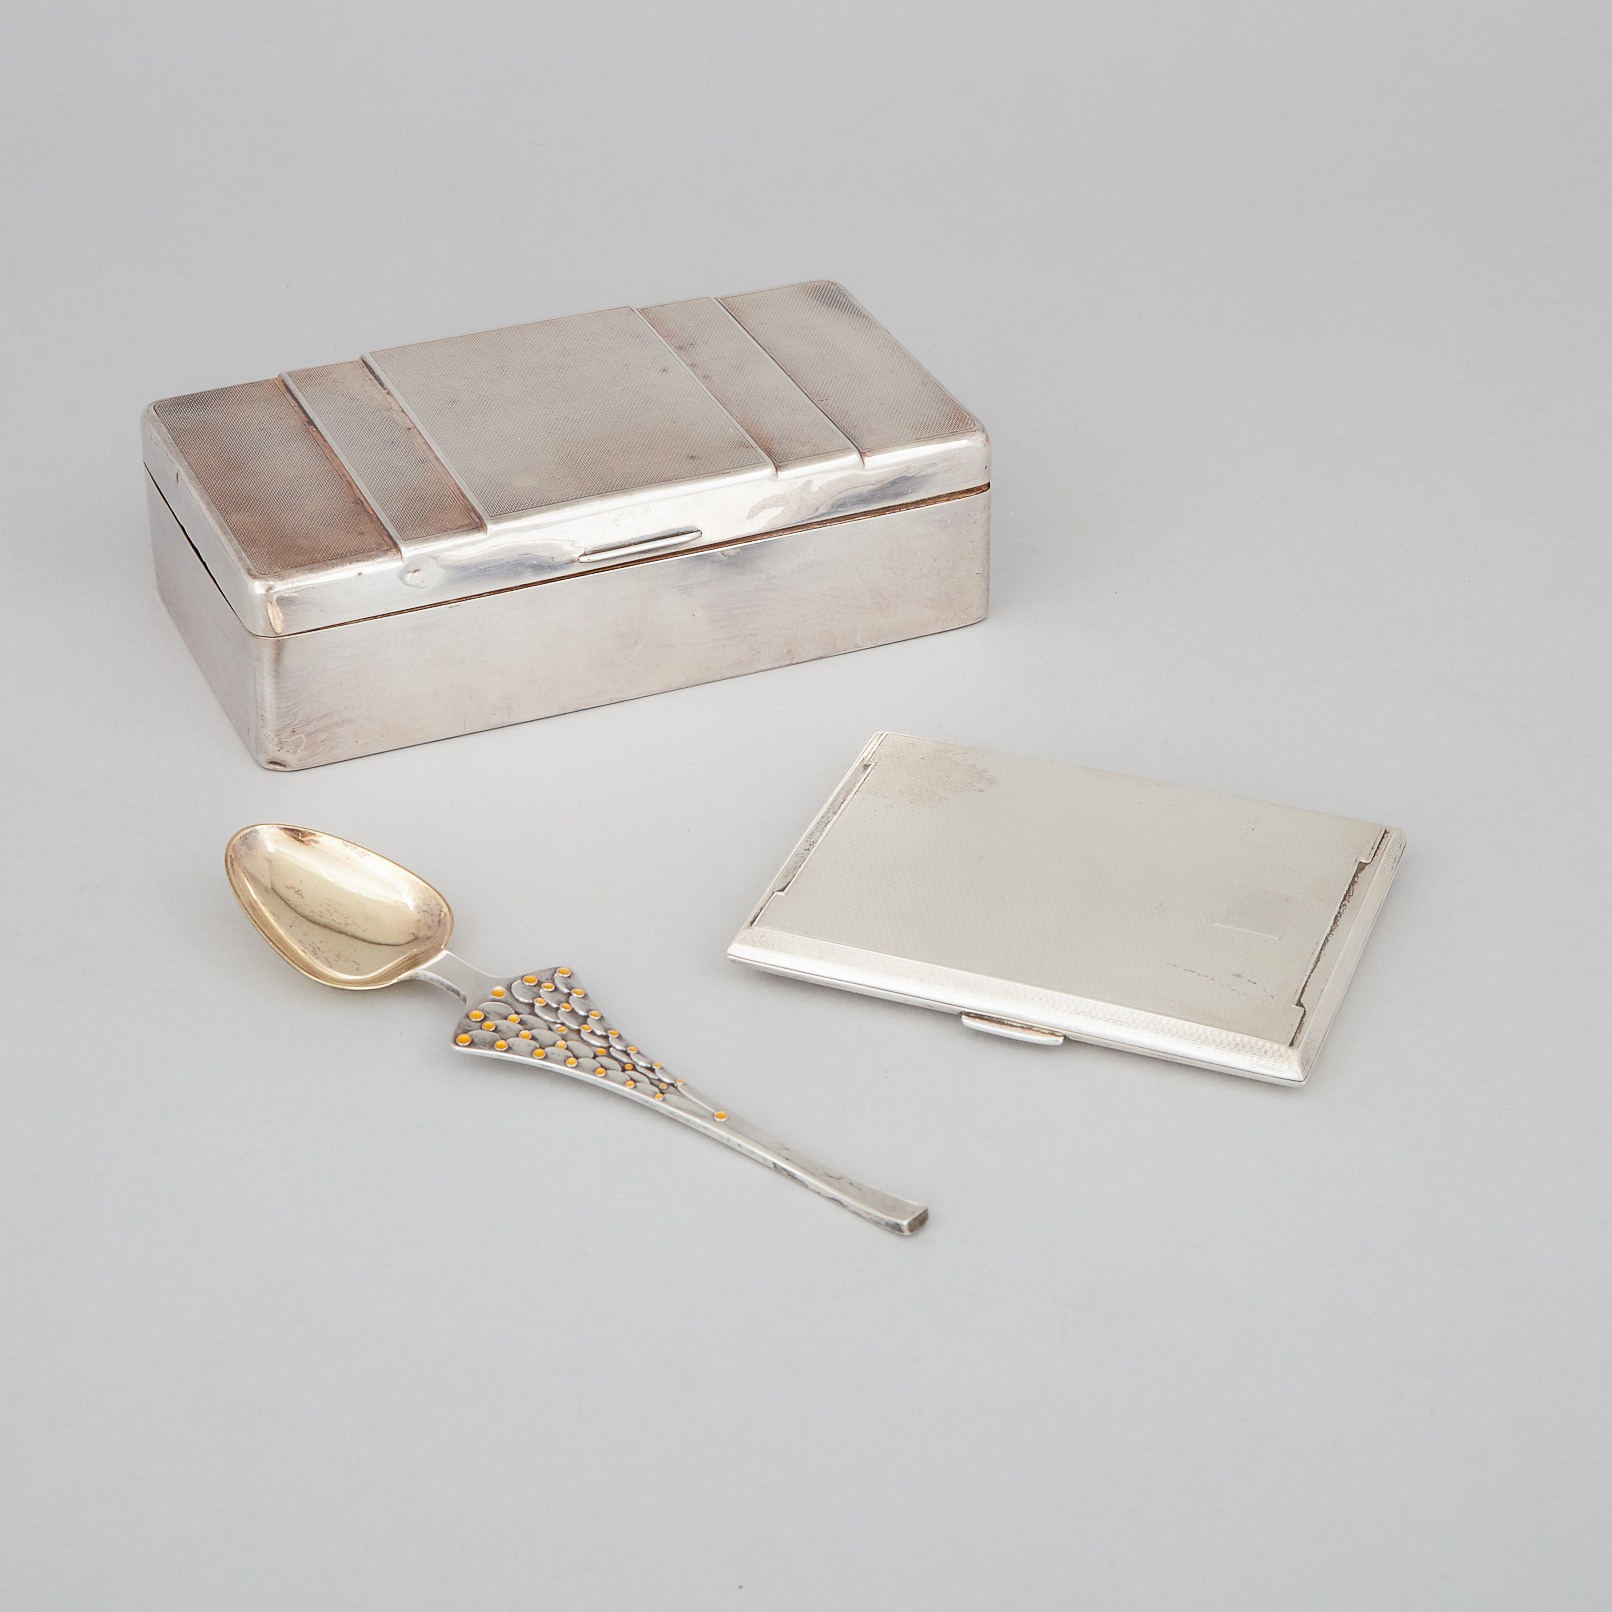 English Silver Cigarette Box, Cigarette Case and a Danish Silver and Enamel Spoon, 20th century